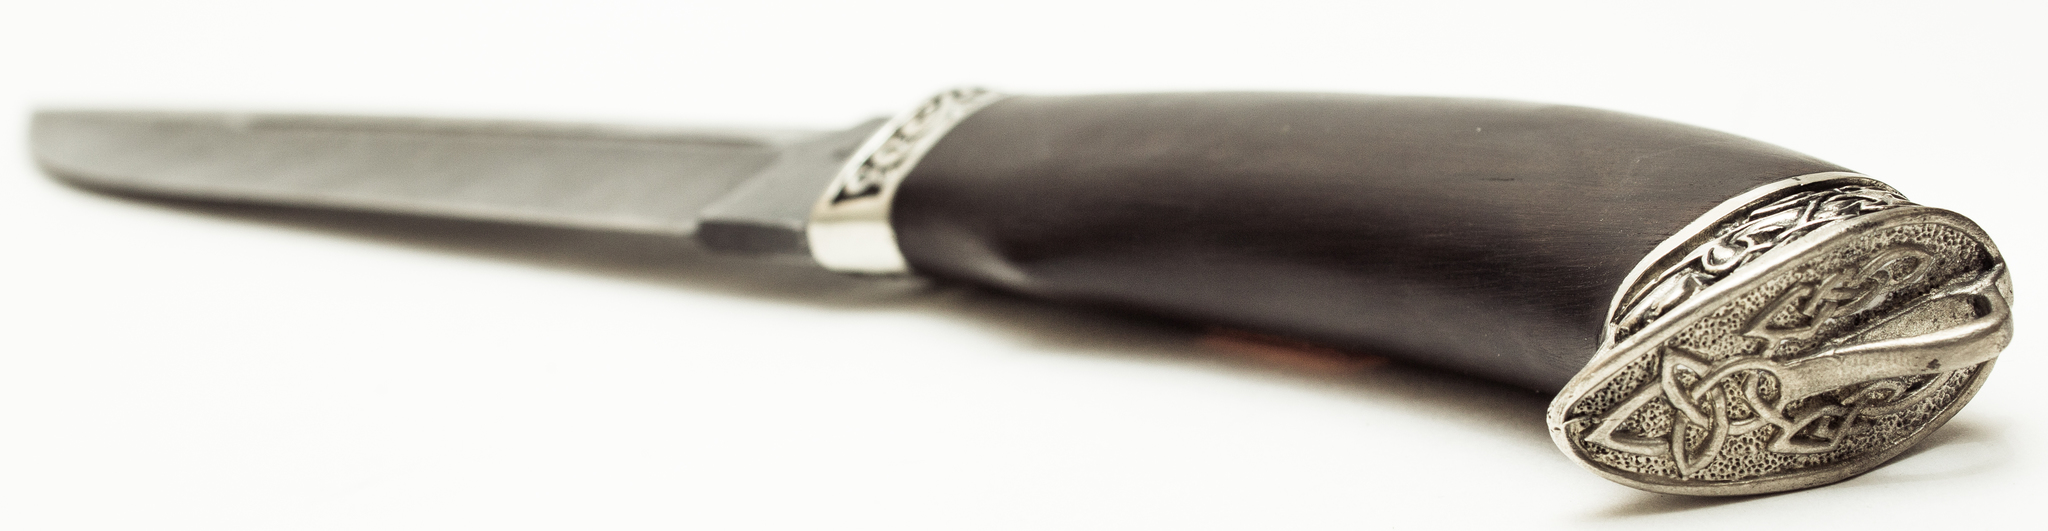 Нож Пластун из дамасской стали, мельхиор - фото 3